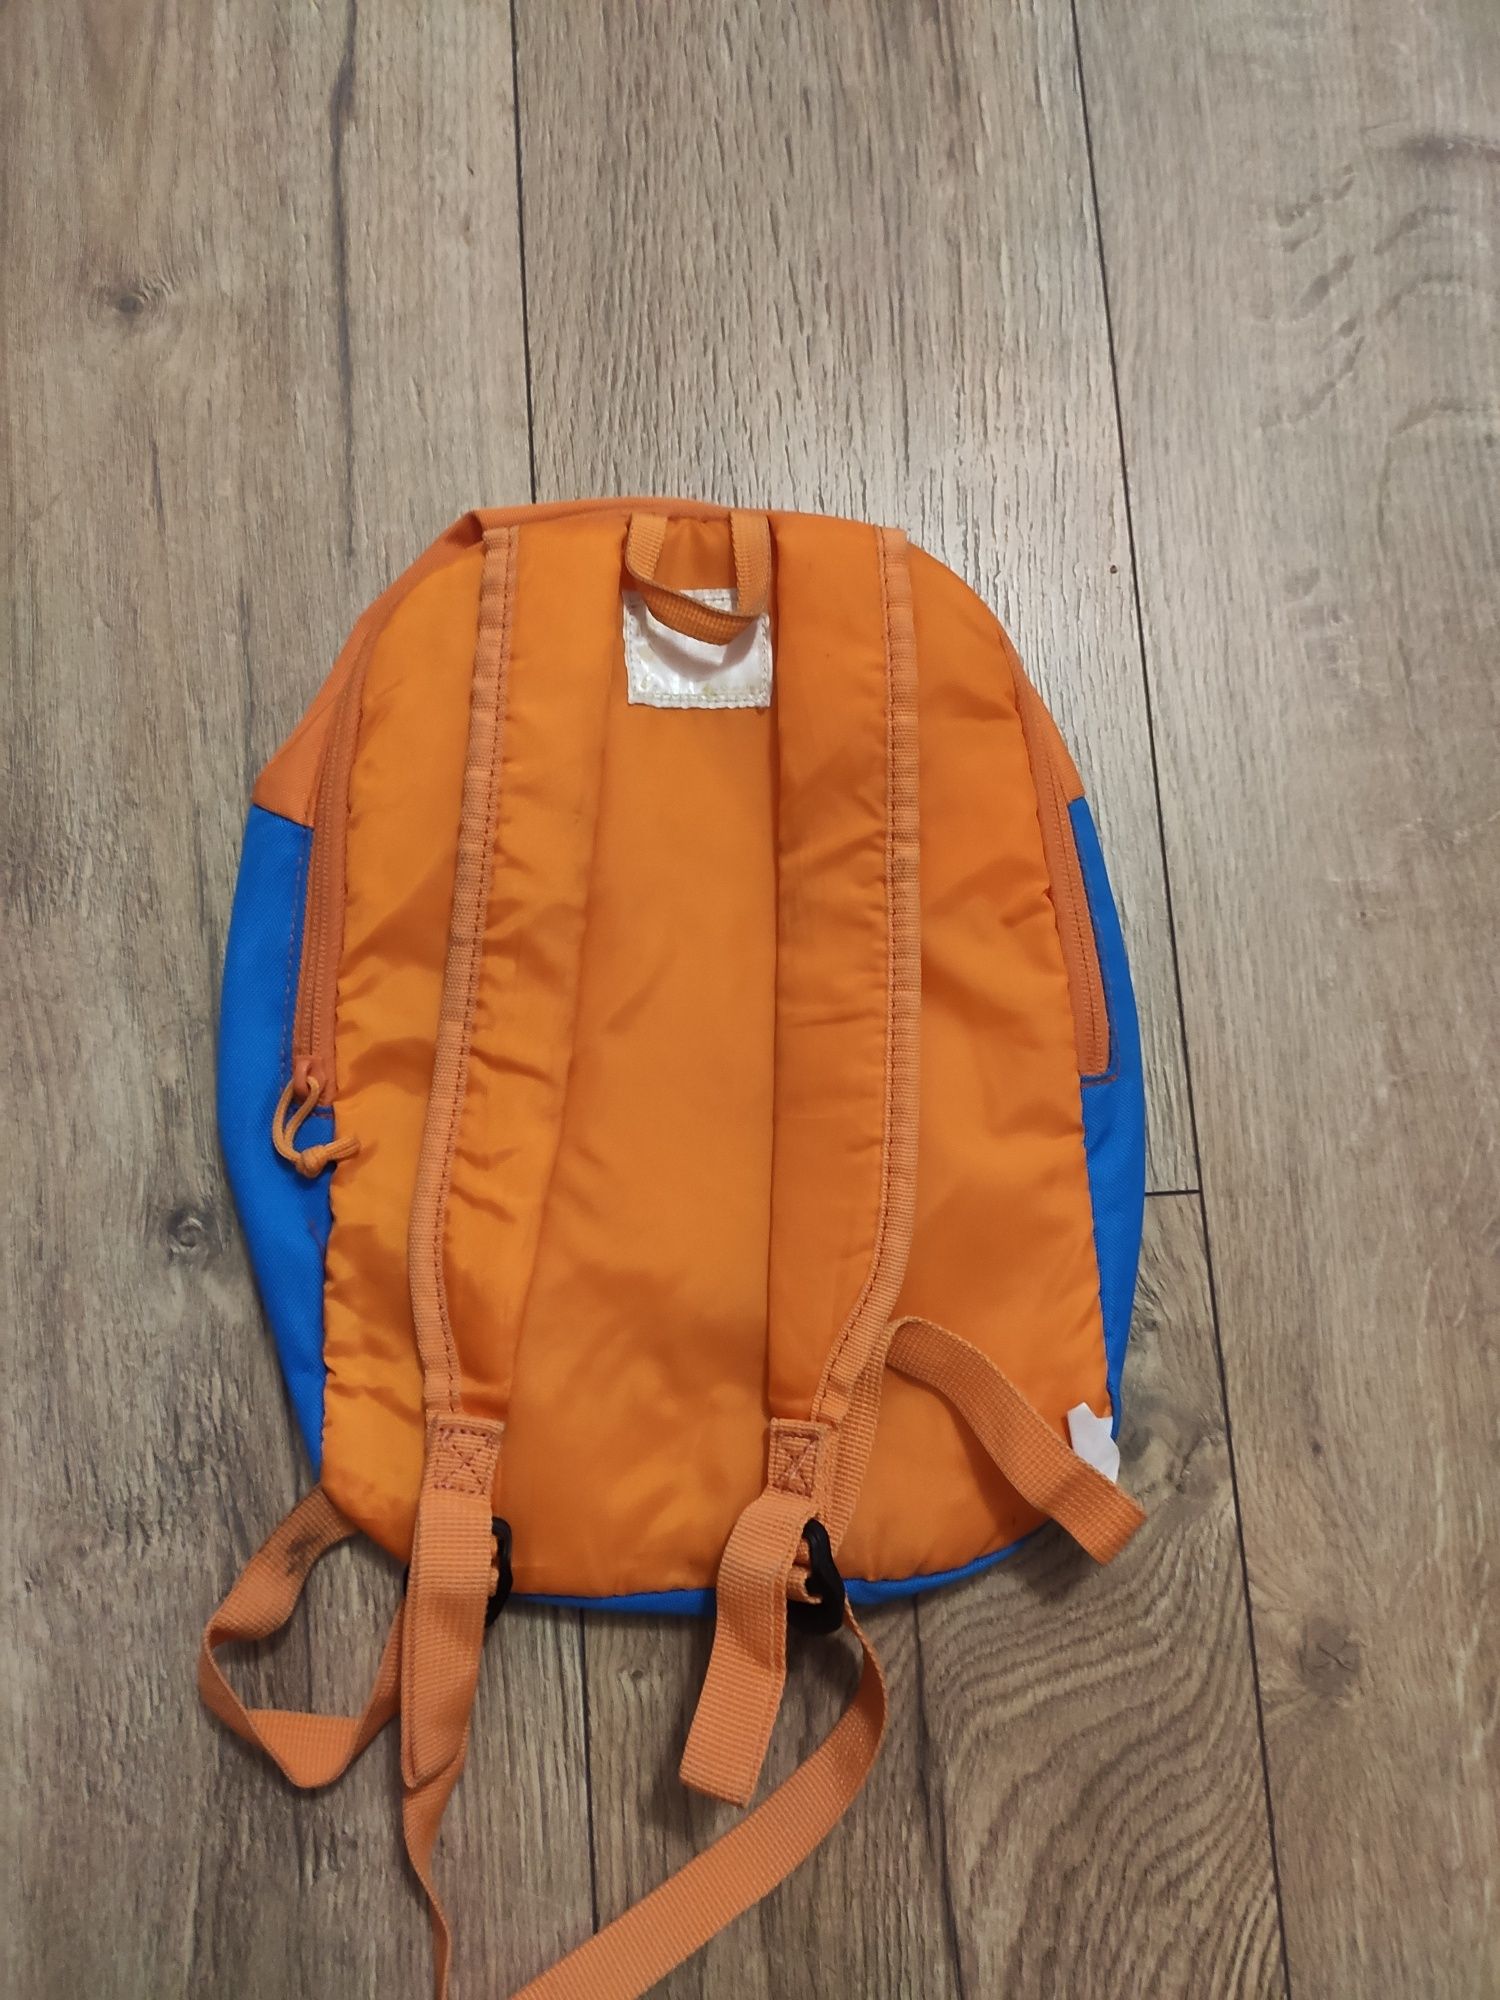 Plecak przedszkolny dla chłopca